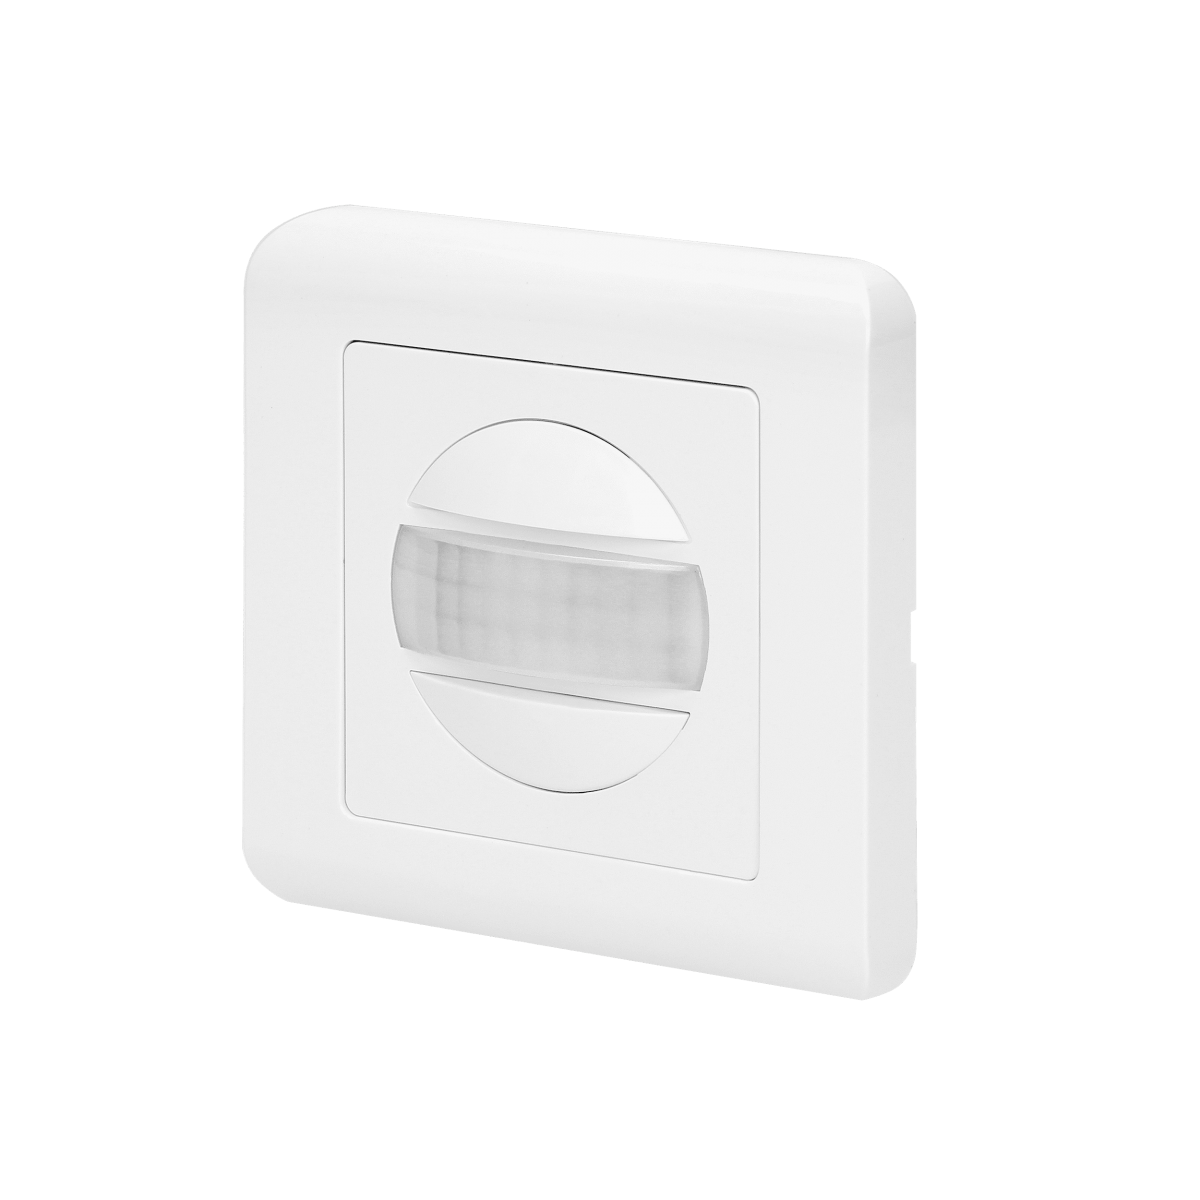 Orno - Interrupteur automatique avec détection de mouvement - Orno - Détecteur connecté